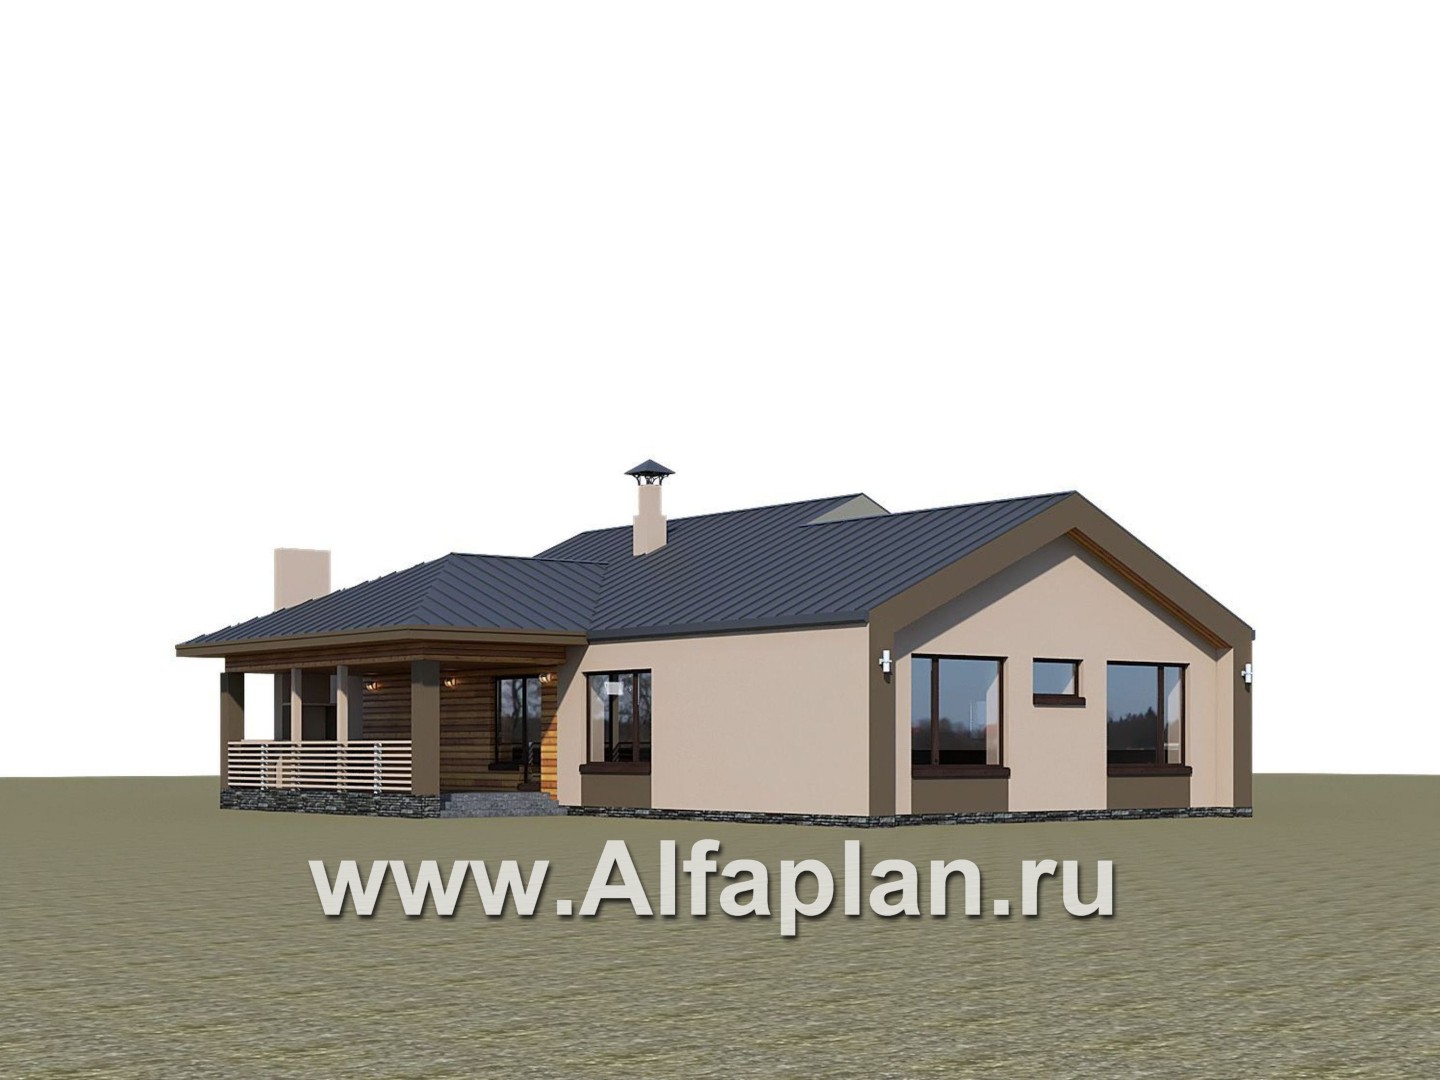 Проекты домов Альфаплан - «Аркада» - проект одноэтажного дома, современный стиль, барнхаус, с фальцевой кровлей - дополнительное изображение №2